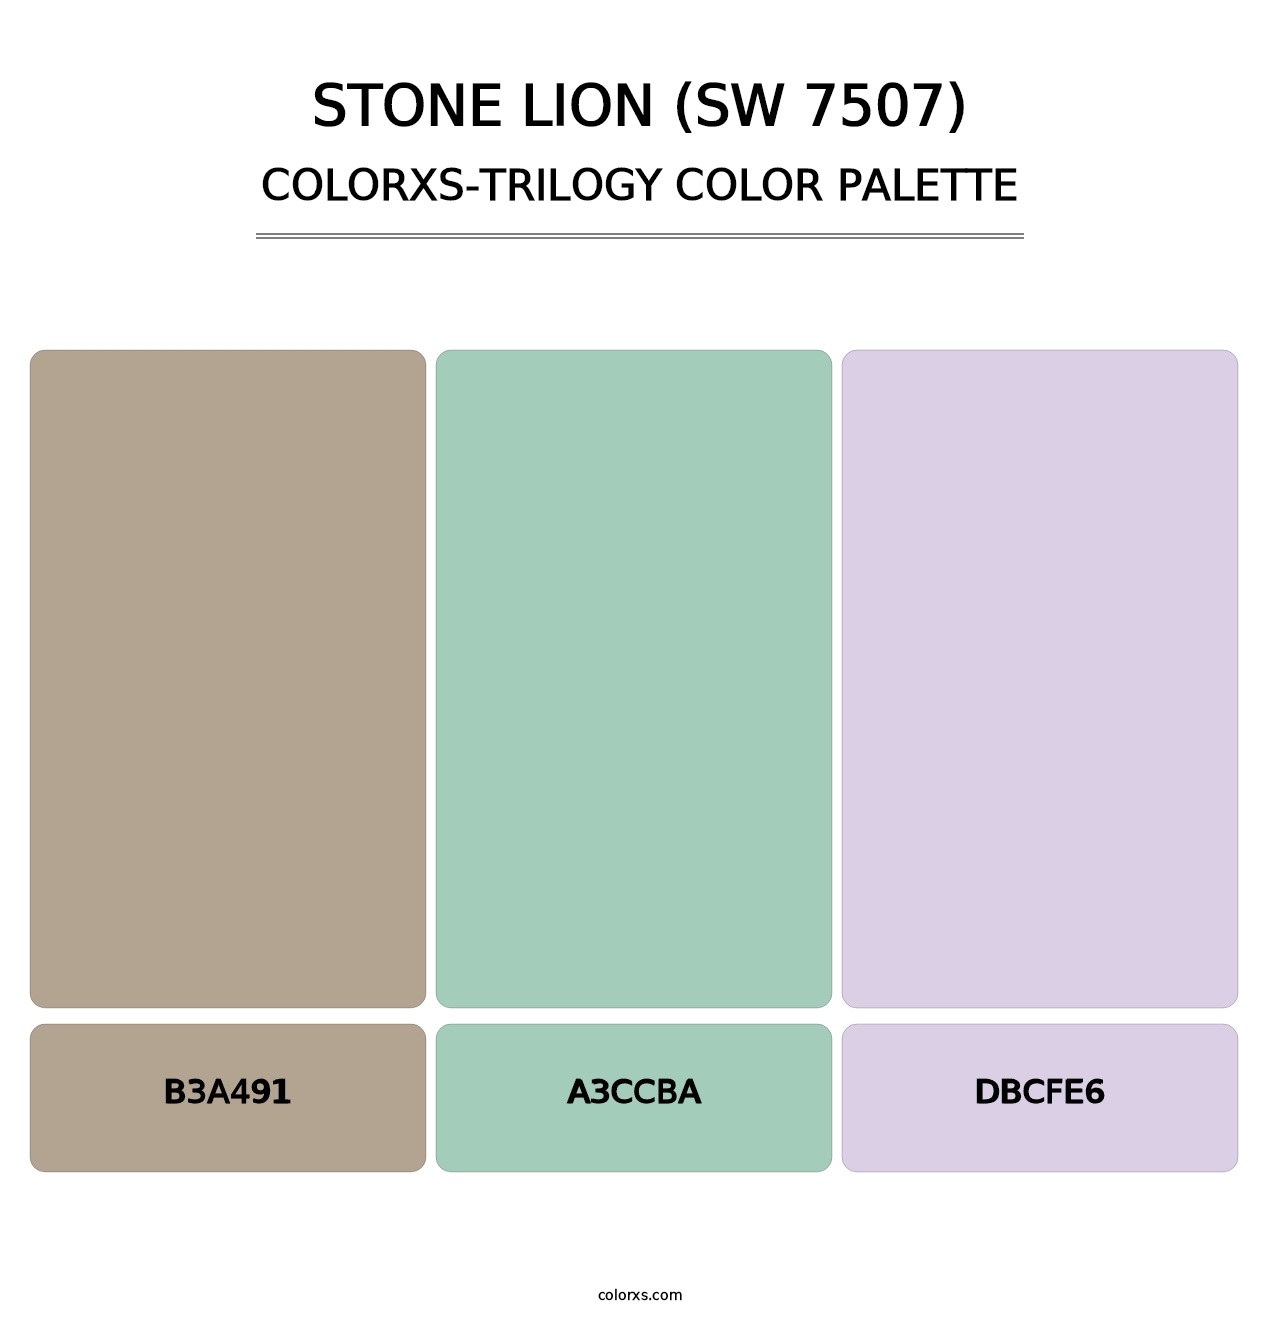 Stone Lion (SW 7507) - Colorxs Trilogy Palette